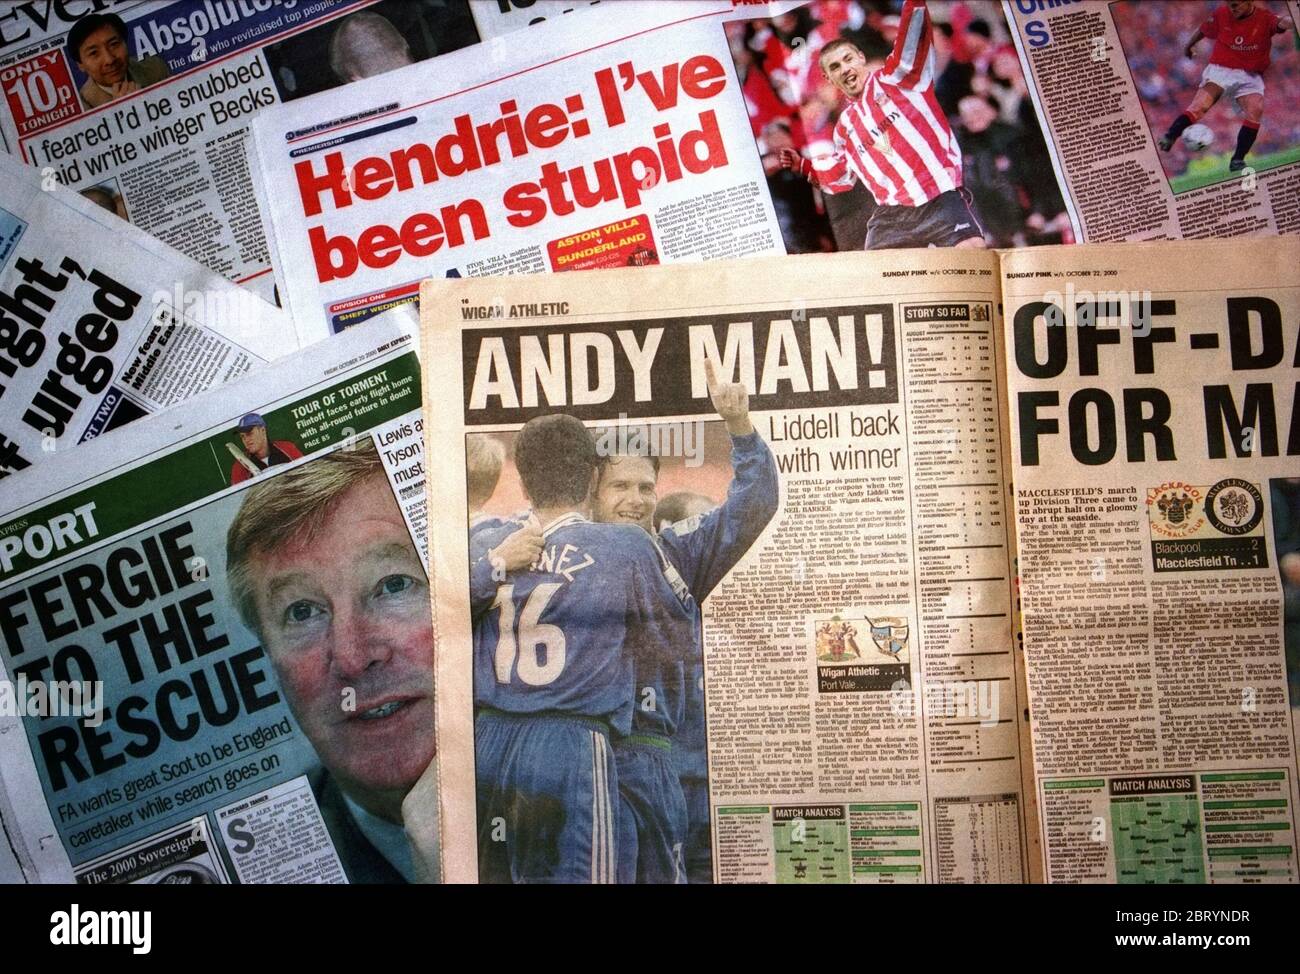 Journaux et tabloïdes de sport publiés entre le 20 octobre et le 22 octobre 2000 en Angleterre, achetés à Manchester. Photo d'archive. Banque D'Images